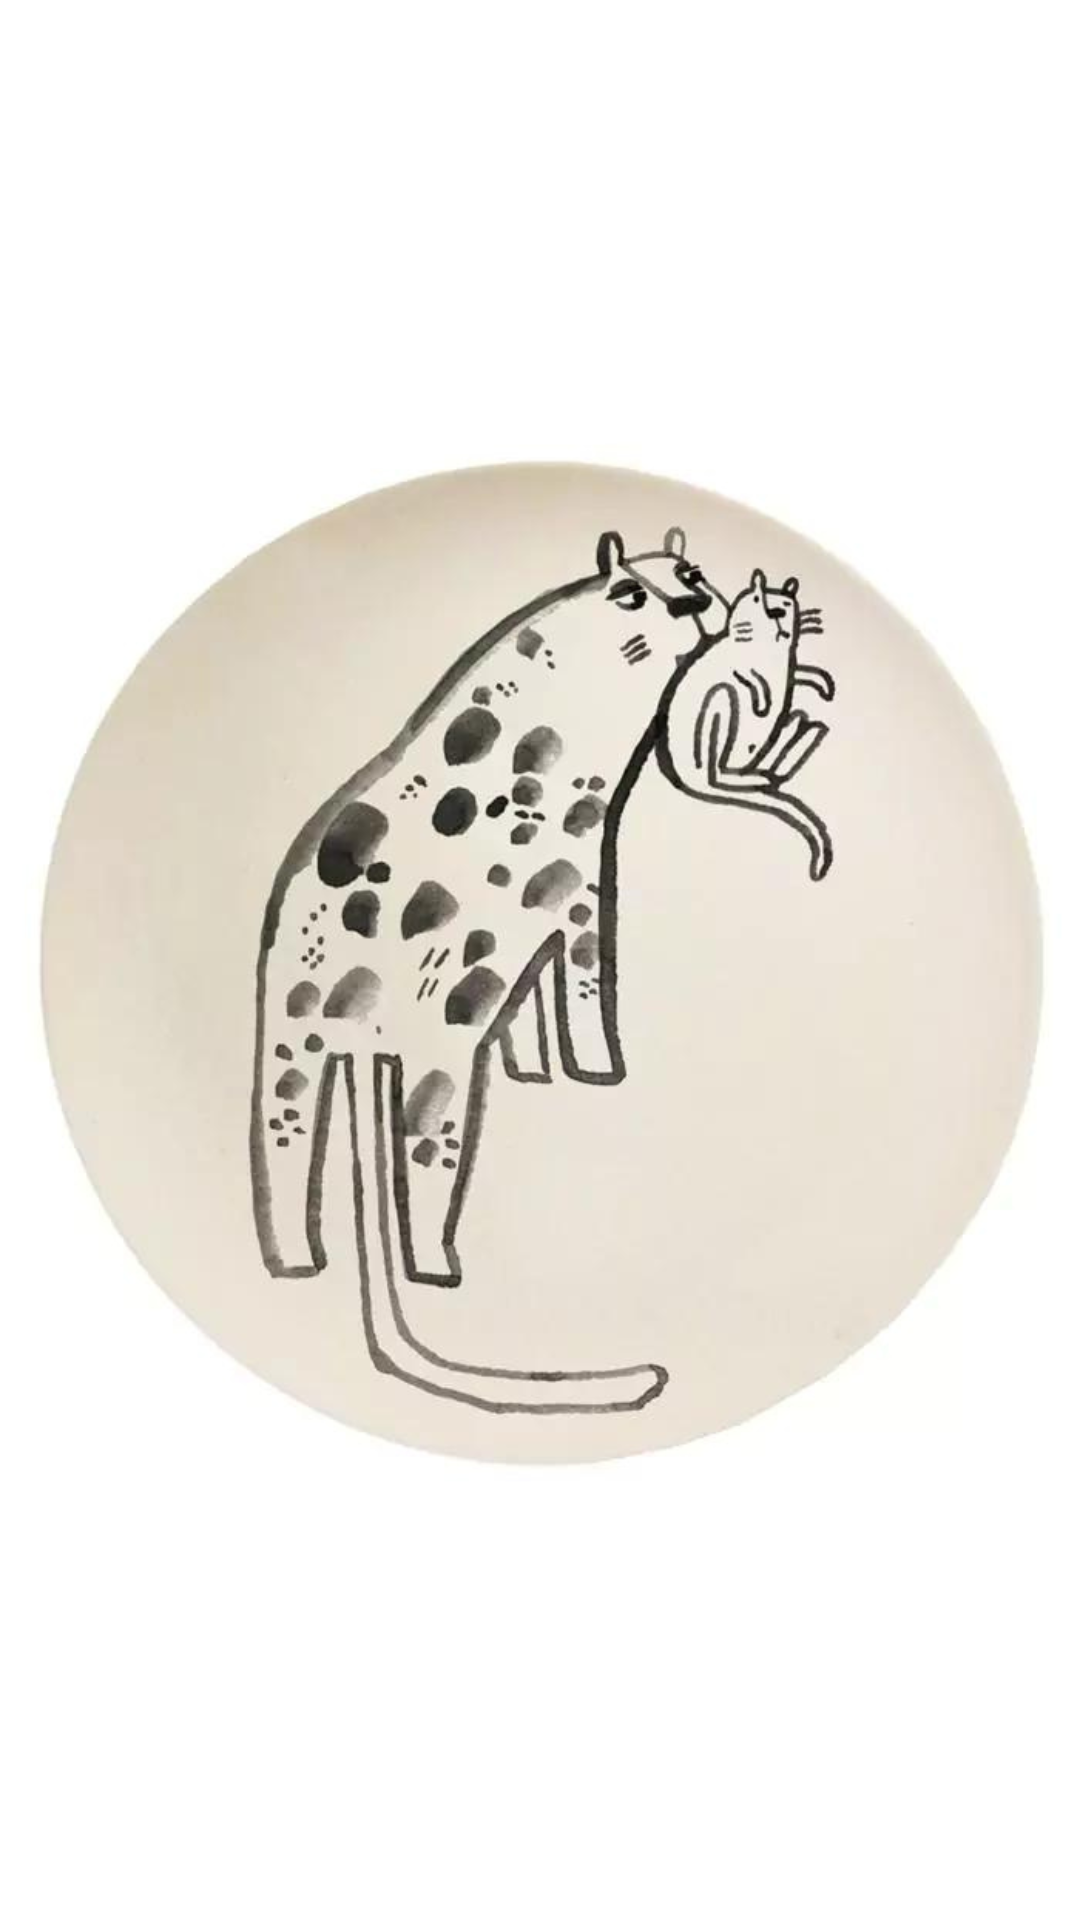 Illustration eines stilisierten Leoparden mit Flecken, dargestellt in einer verspielten Pose, seine Pfote leckend, vor einem schlichten, hellen Hintergrund in einem kreisförmigen Rahmen, der als Nuukk-Teller gestaltet ist.